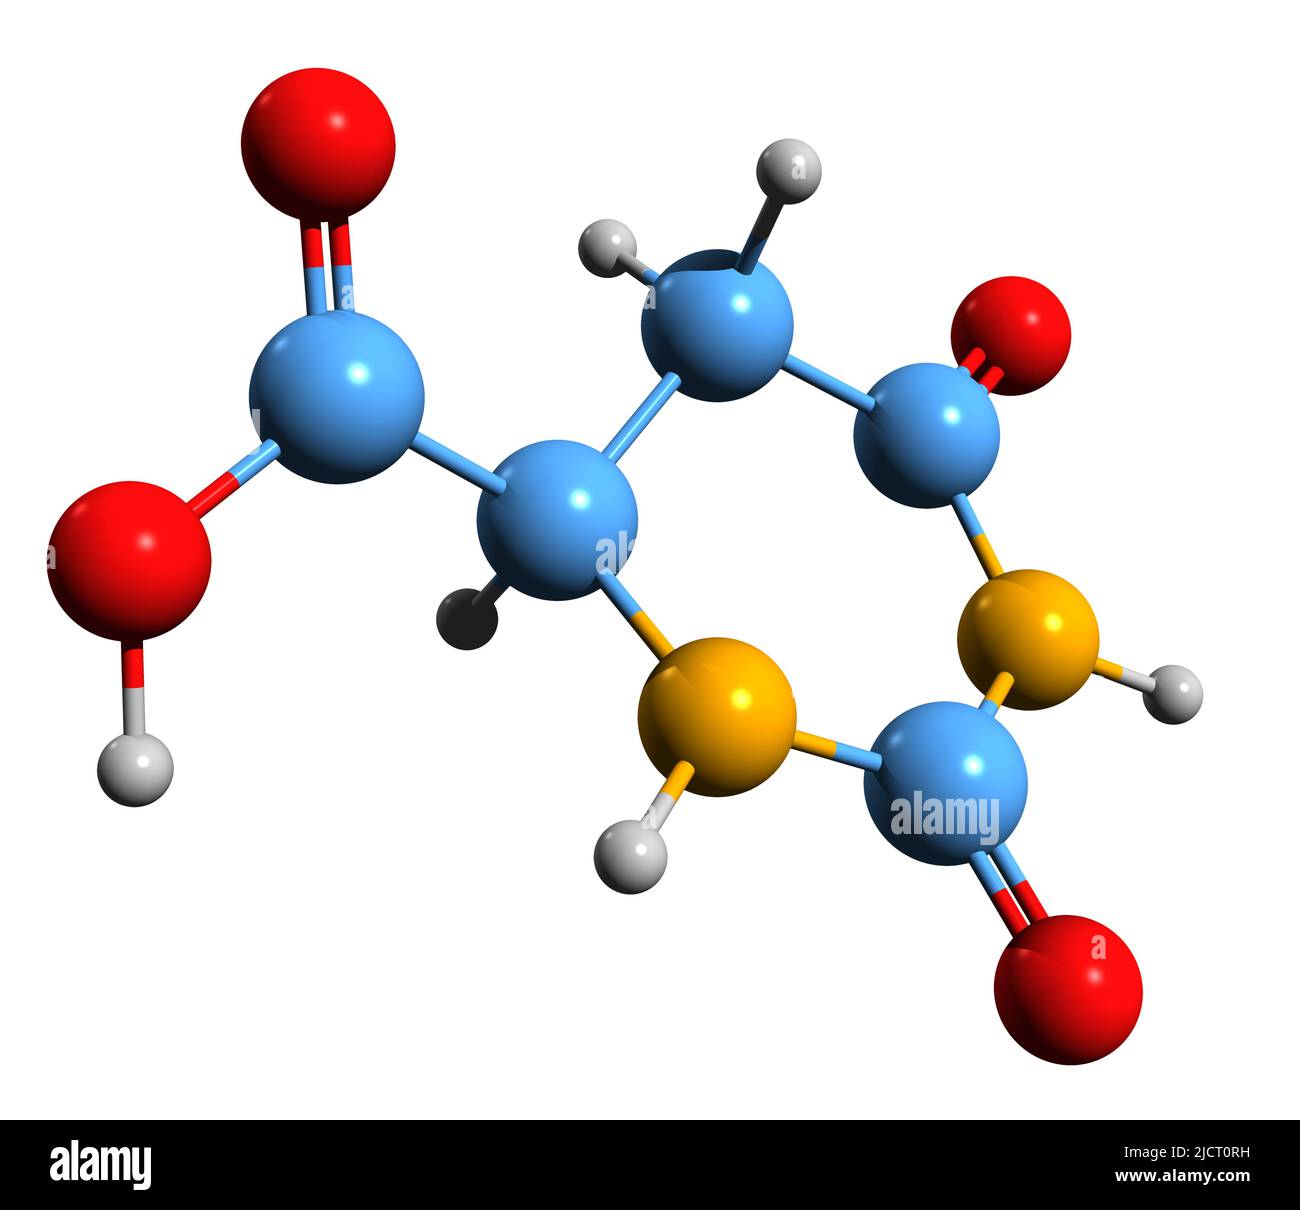 3D image de la formule squelettique de l'acide 4,5-dihydroorotique - structure chimique moléculaire de l'intermédiaire dans la biosynthèse de la pyrimidine isolée sur le dos blanc Banque D'Images